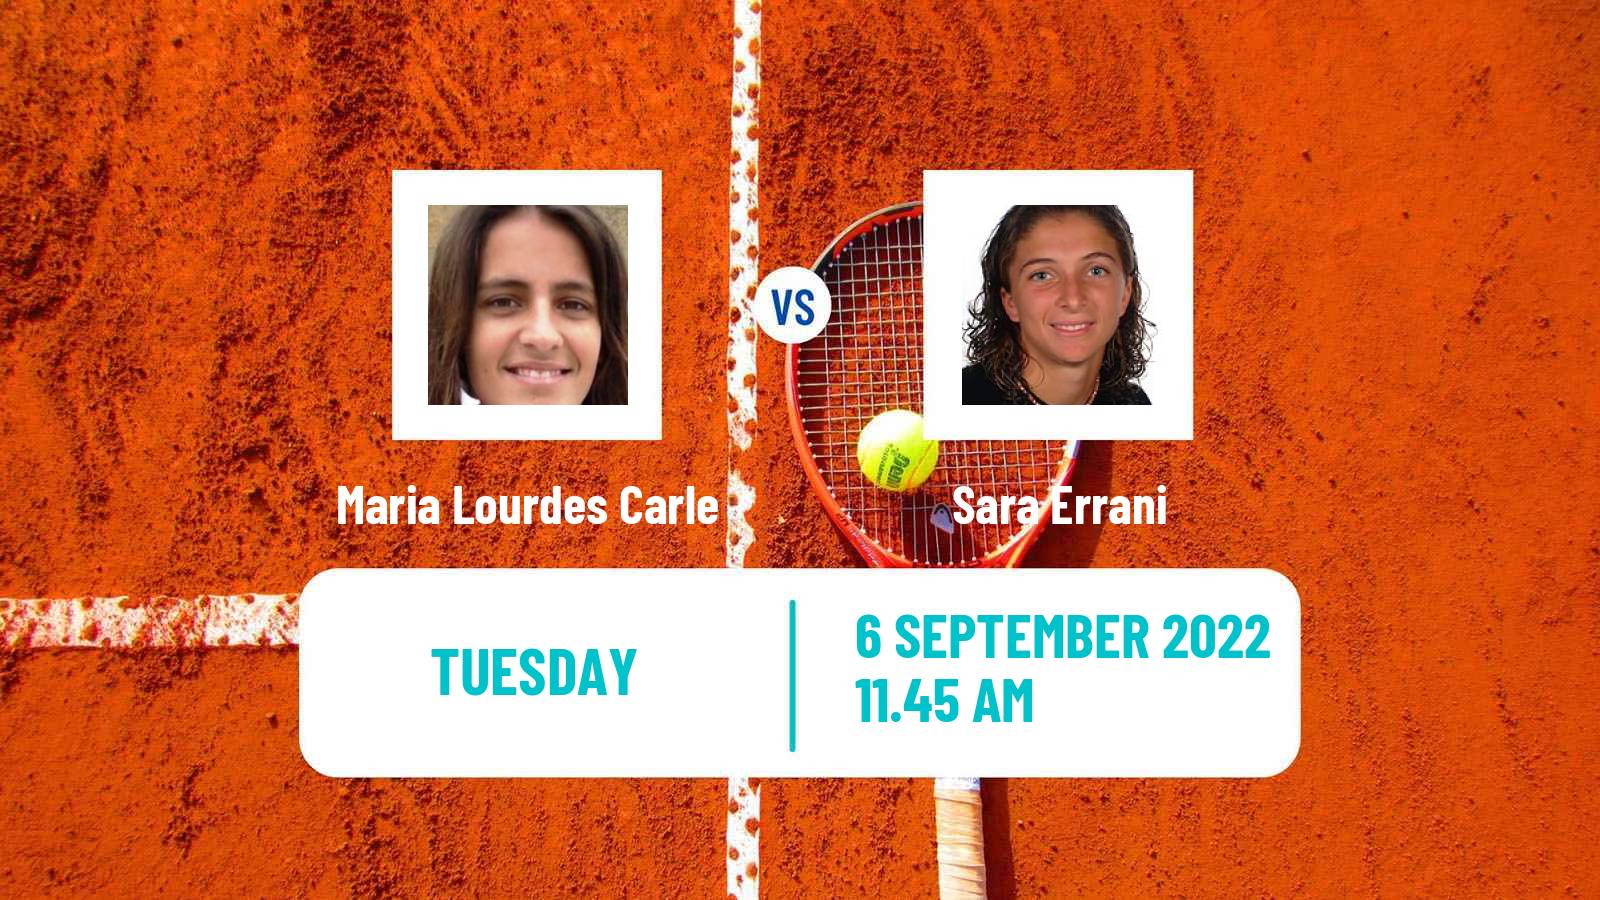 Tennis ATP Challenger Maria Lourdes Carle - Sara Errani